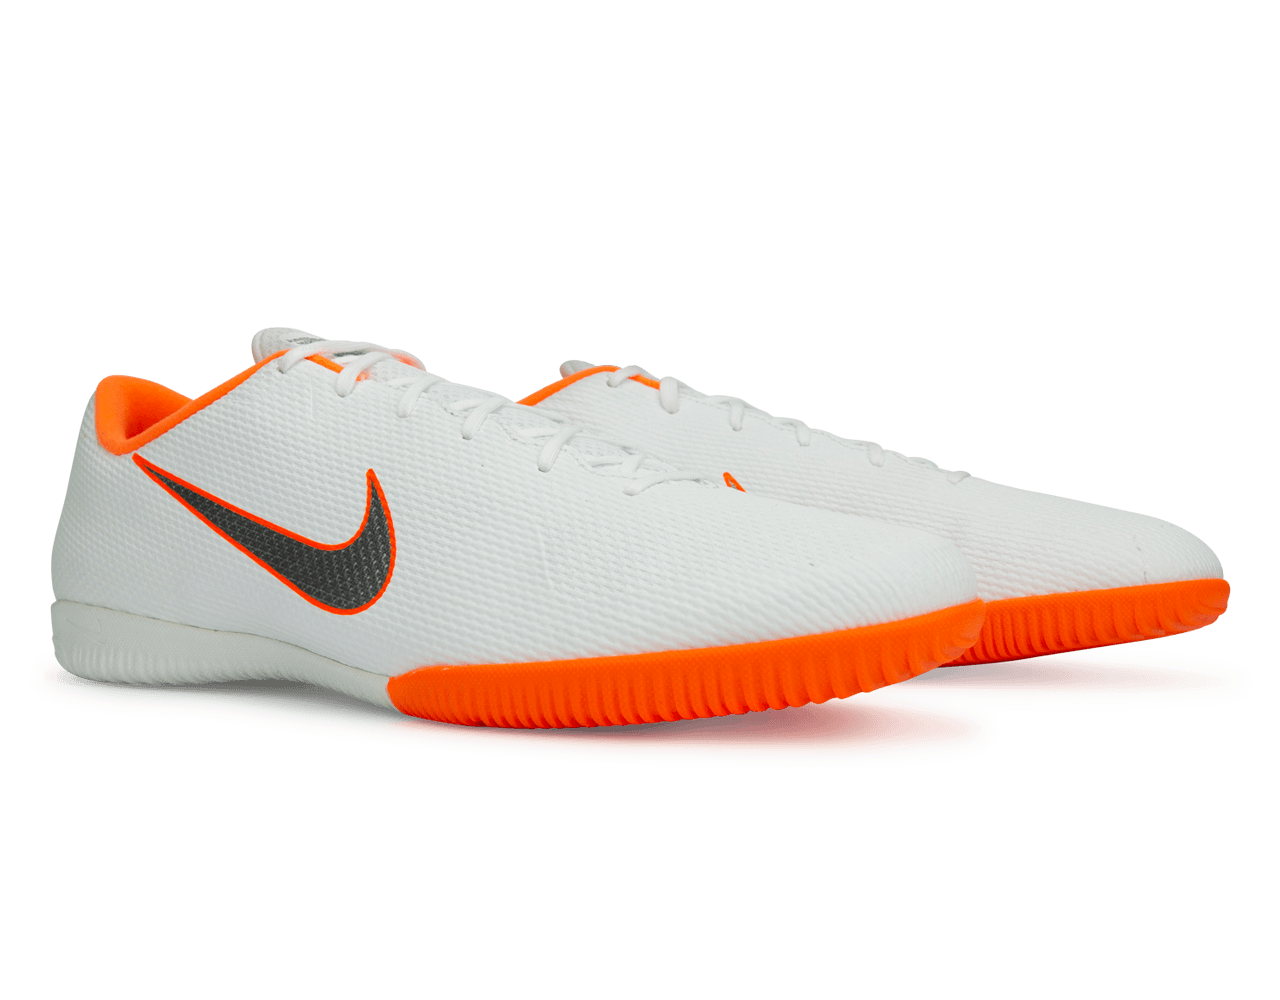 Nike Men's Mercurial Vapor 12 Academy Indoor Soccer Shoes White/Metallic Cool Grey/Total Orange